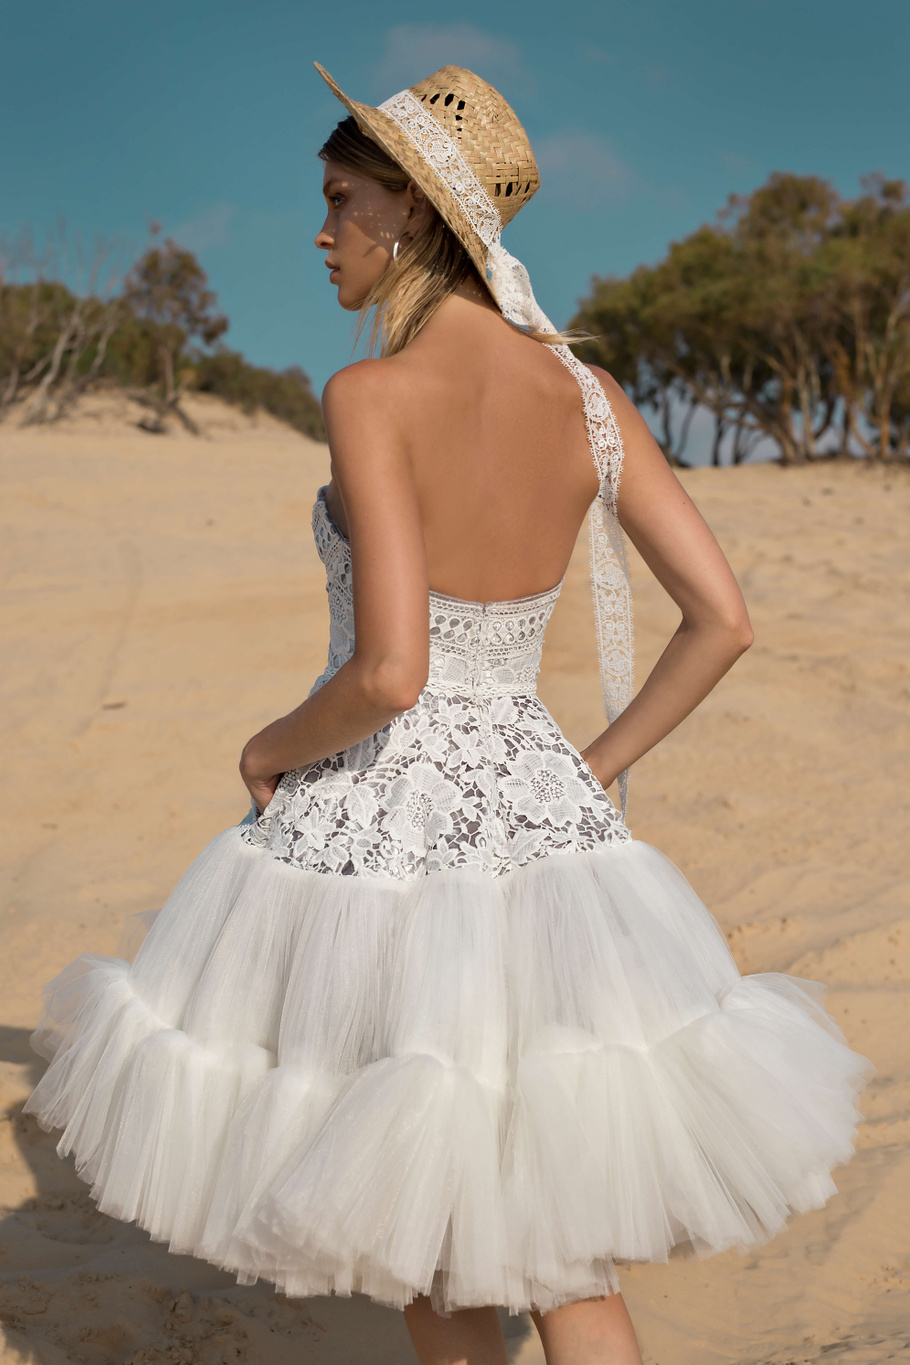 Купить свадебное платье «Стейс» Рара Авис из коллекции Вайлд Соул 2019 года в интернет-магазине «Мэри Трюфель»